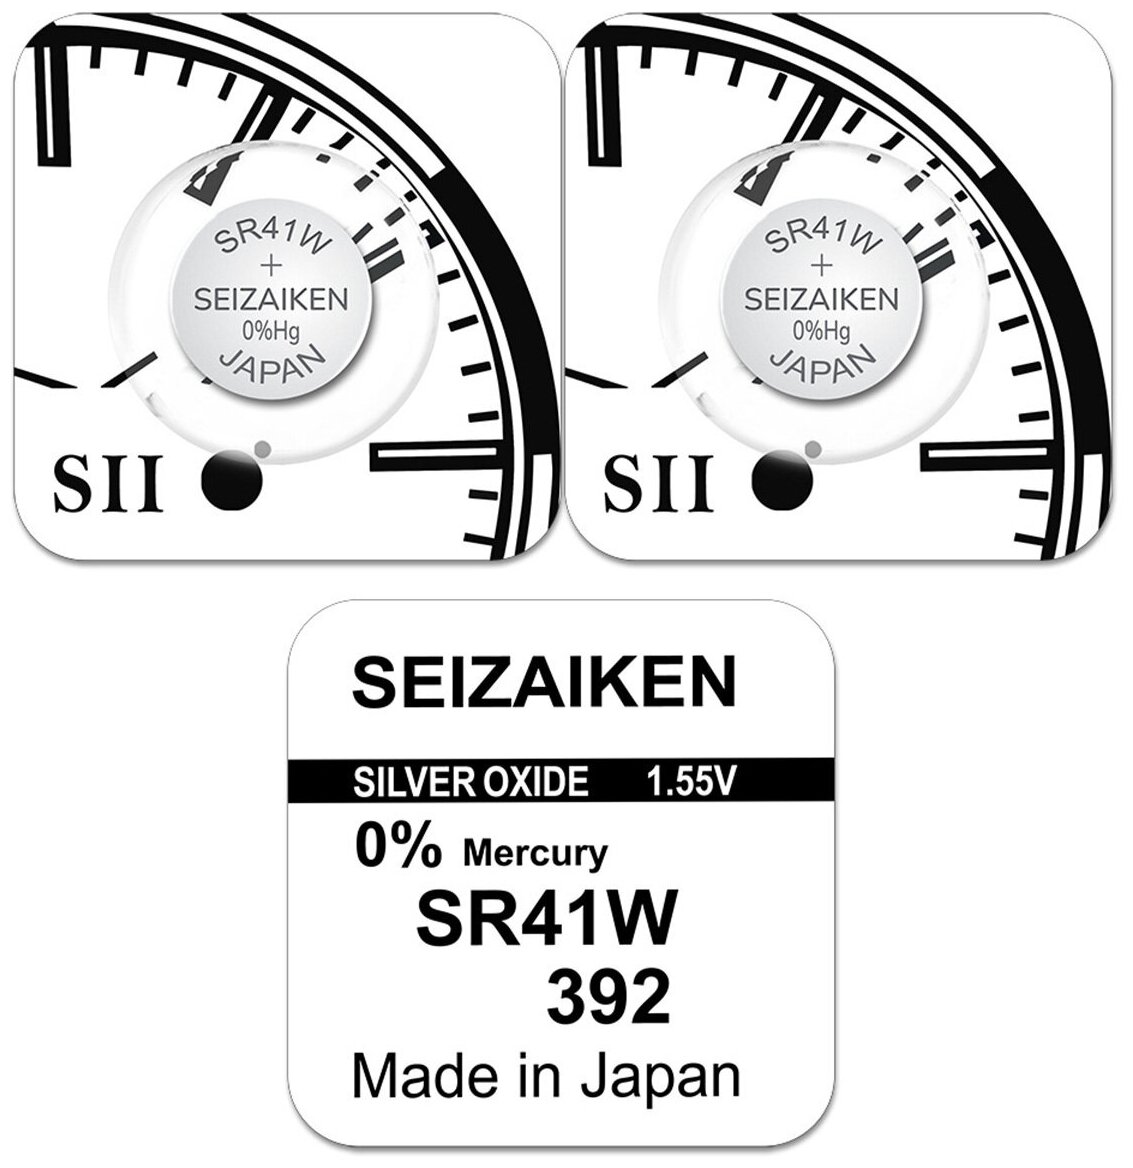 Батарейка Seizaiken 392, LR41, LR736, AG3, SR41W, серия "W" (энергоемкая), 2 шт.